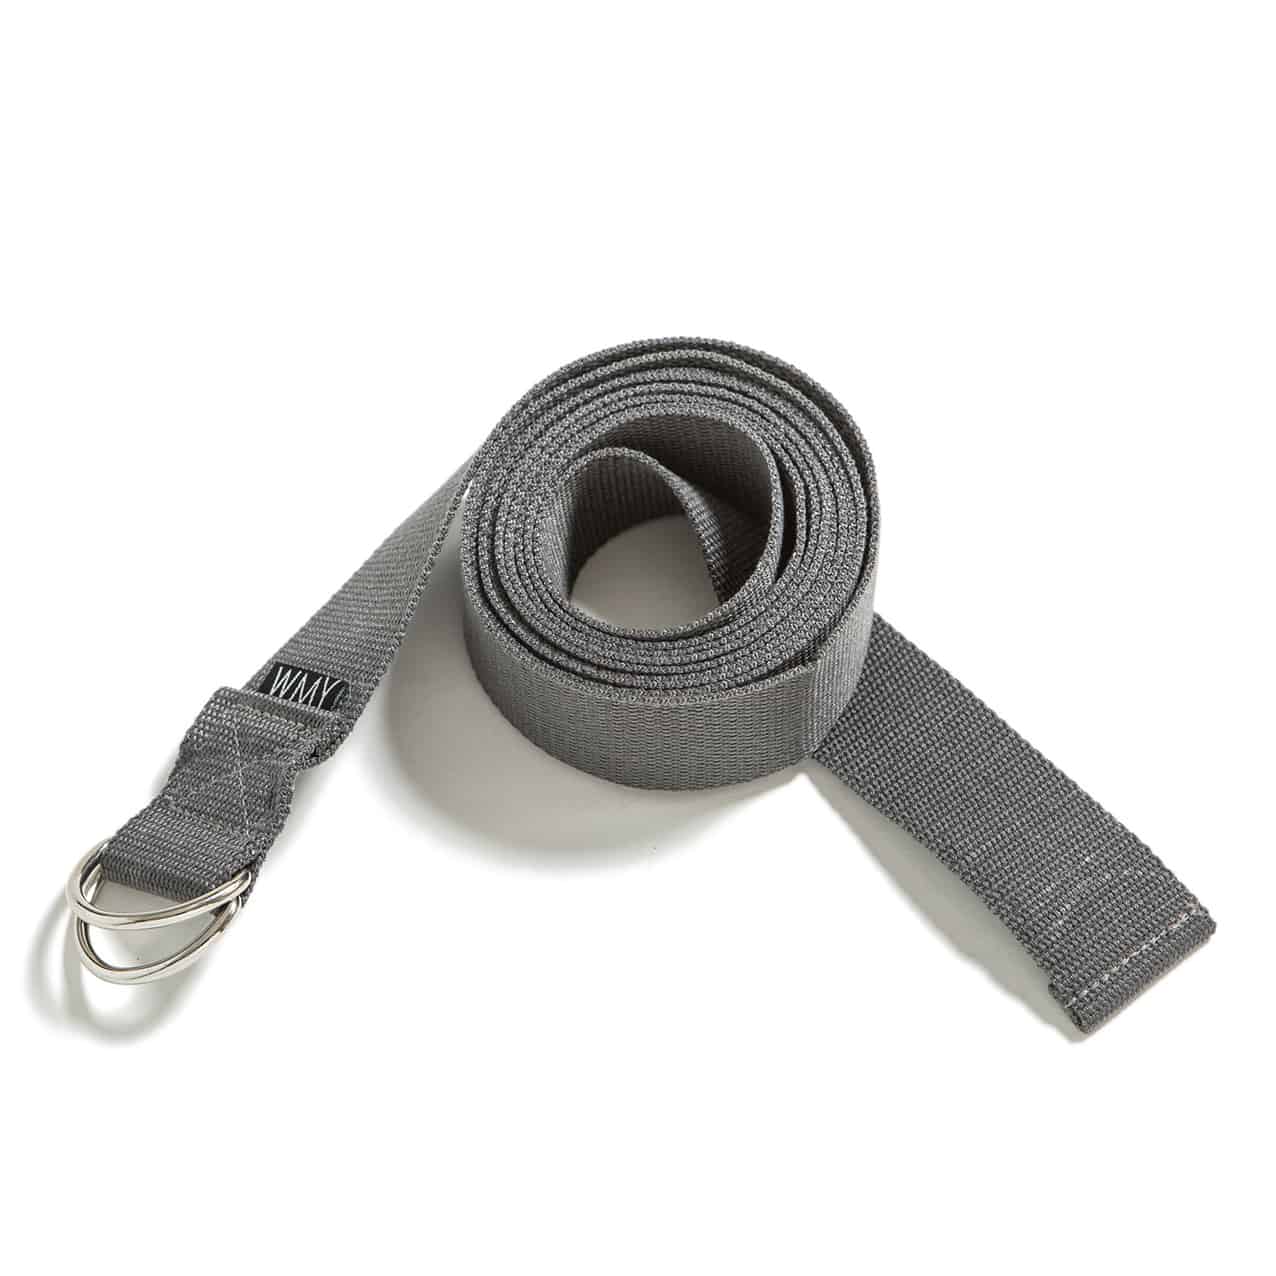 Yoga strap, yoga belt in grey.